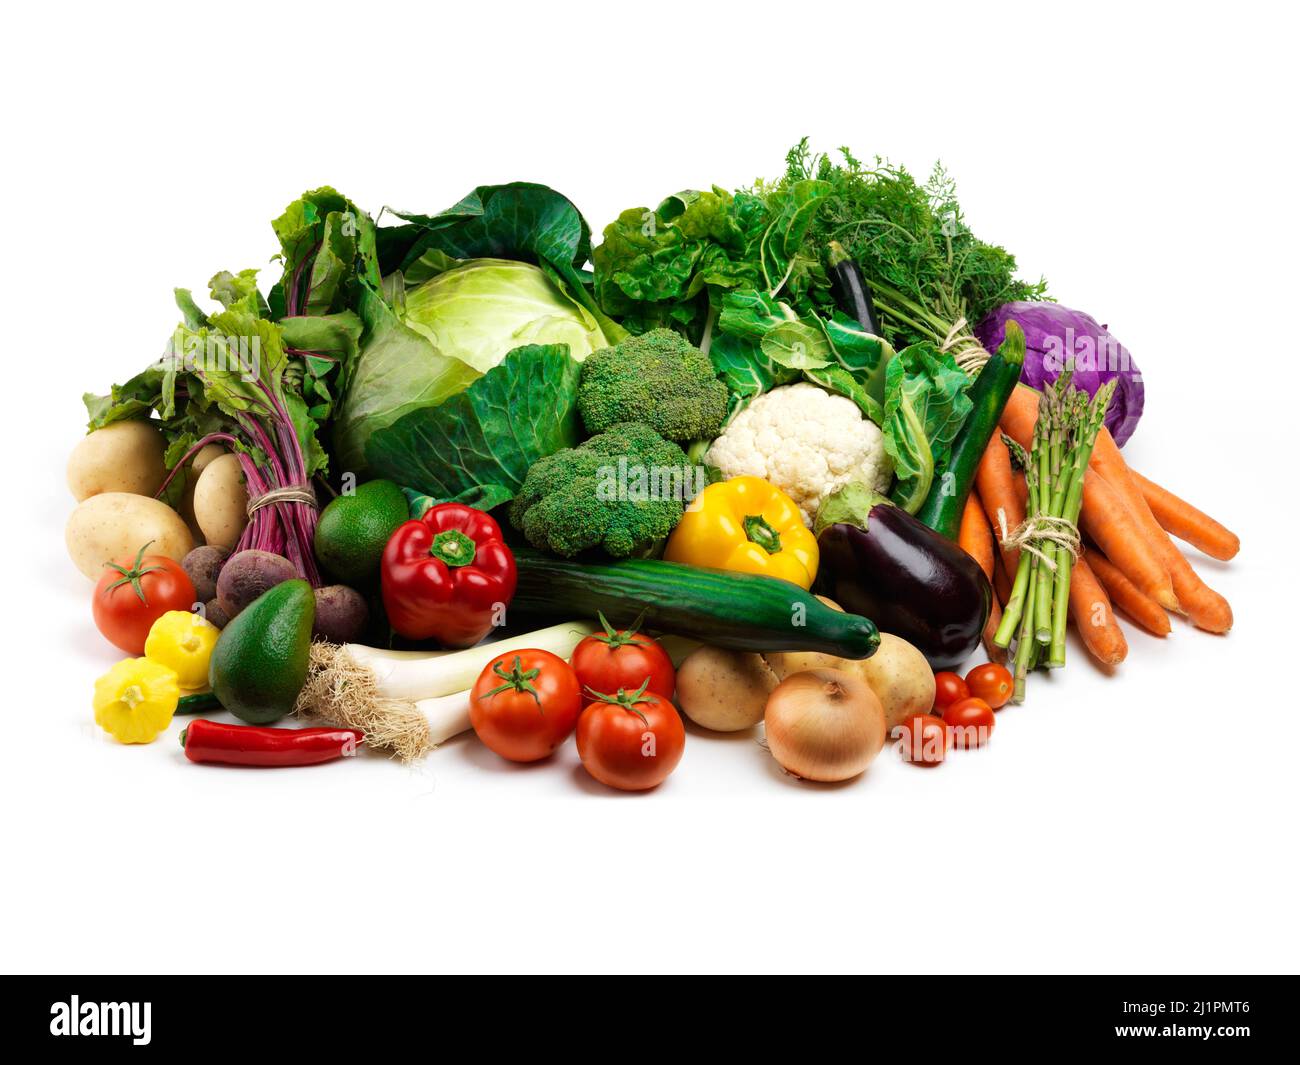 Alle Farben des Gartens. Studioaufnahme eines Haufen Obst und Gemüse vor weißem Hintergrund. Stockfoto